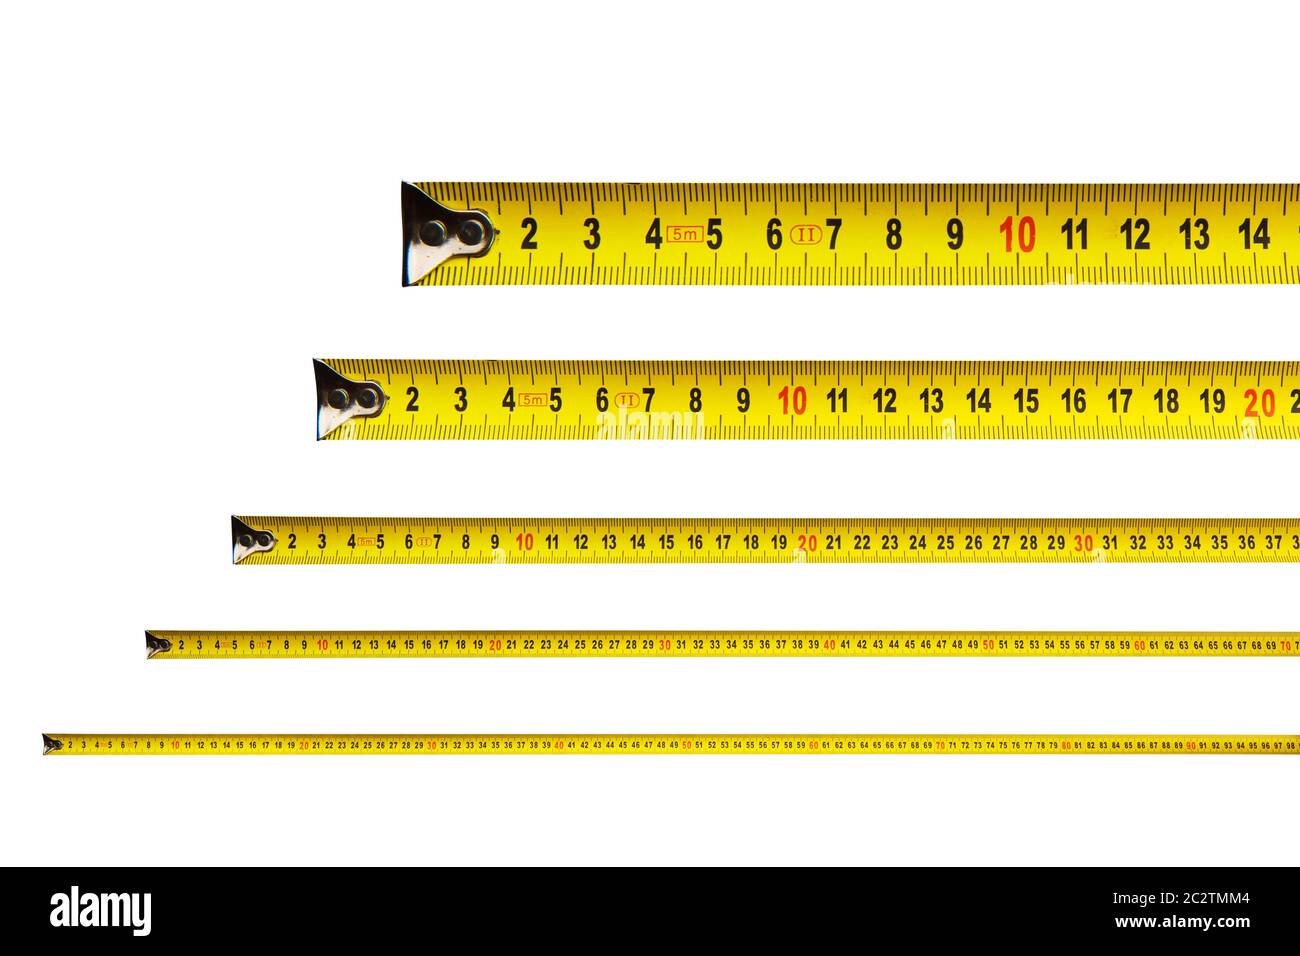 según la indicadacion de arriba cuánto mide la cinta marrón empezando desde  cero midalo en centímetros 